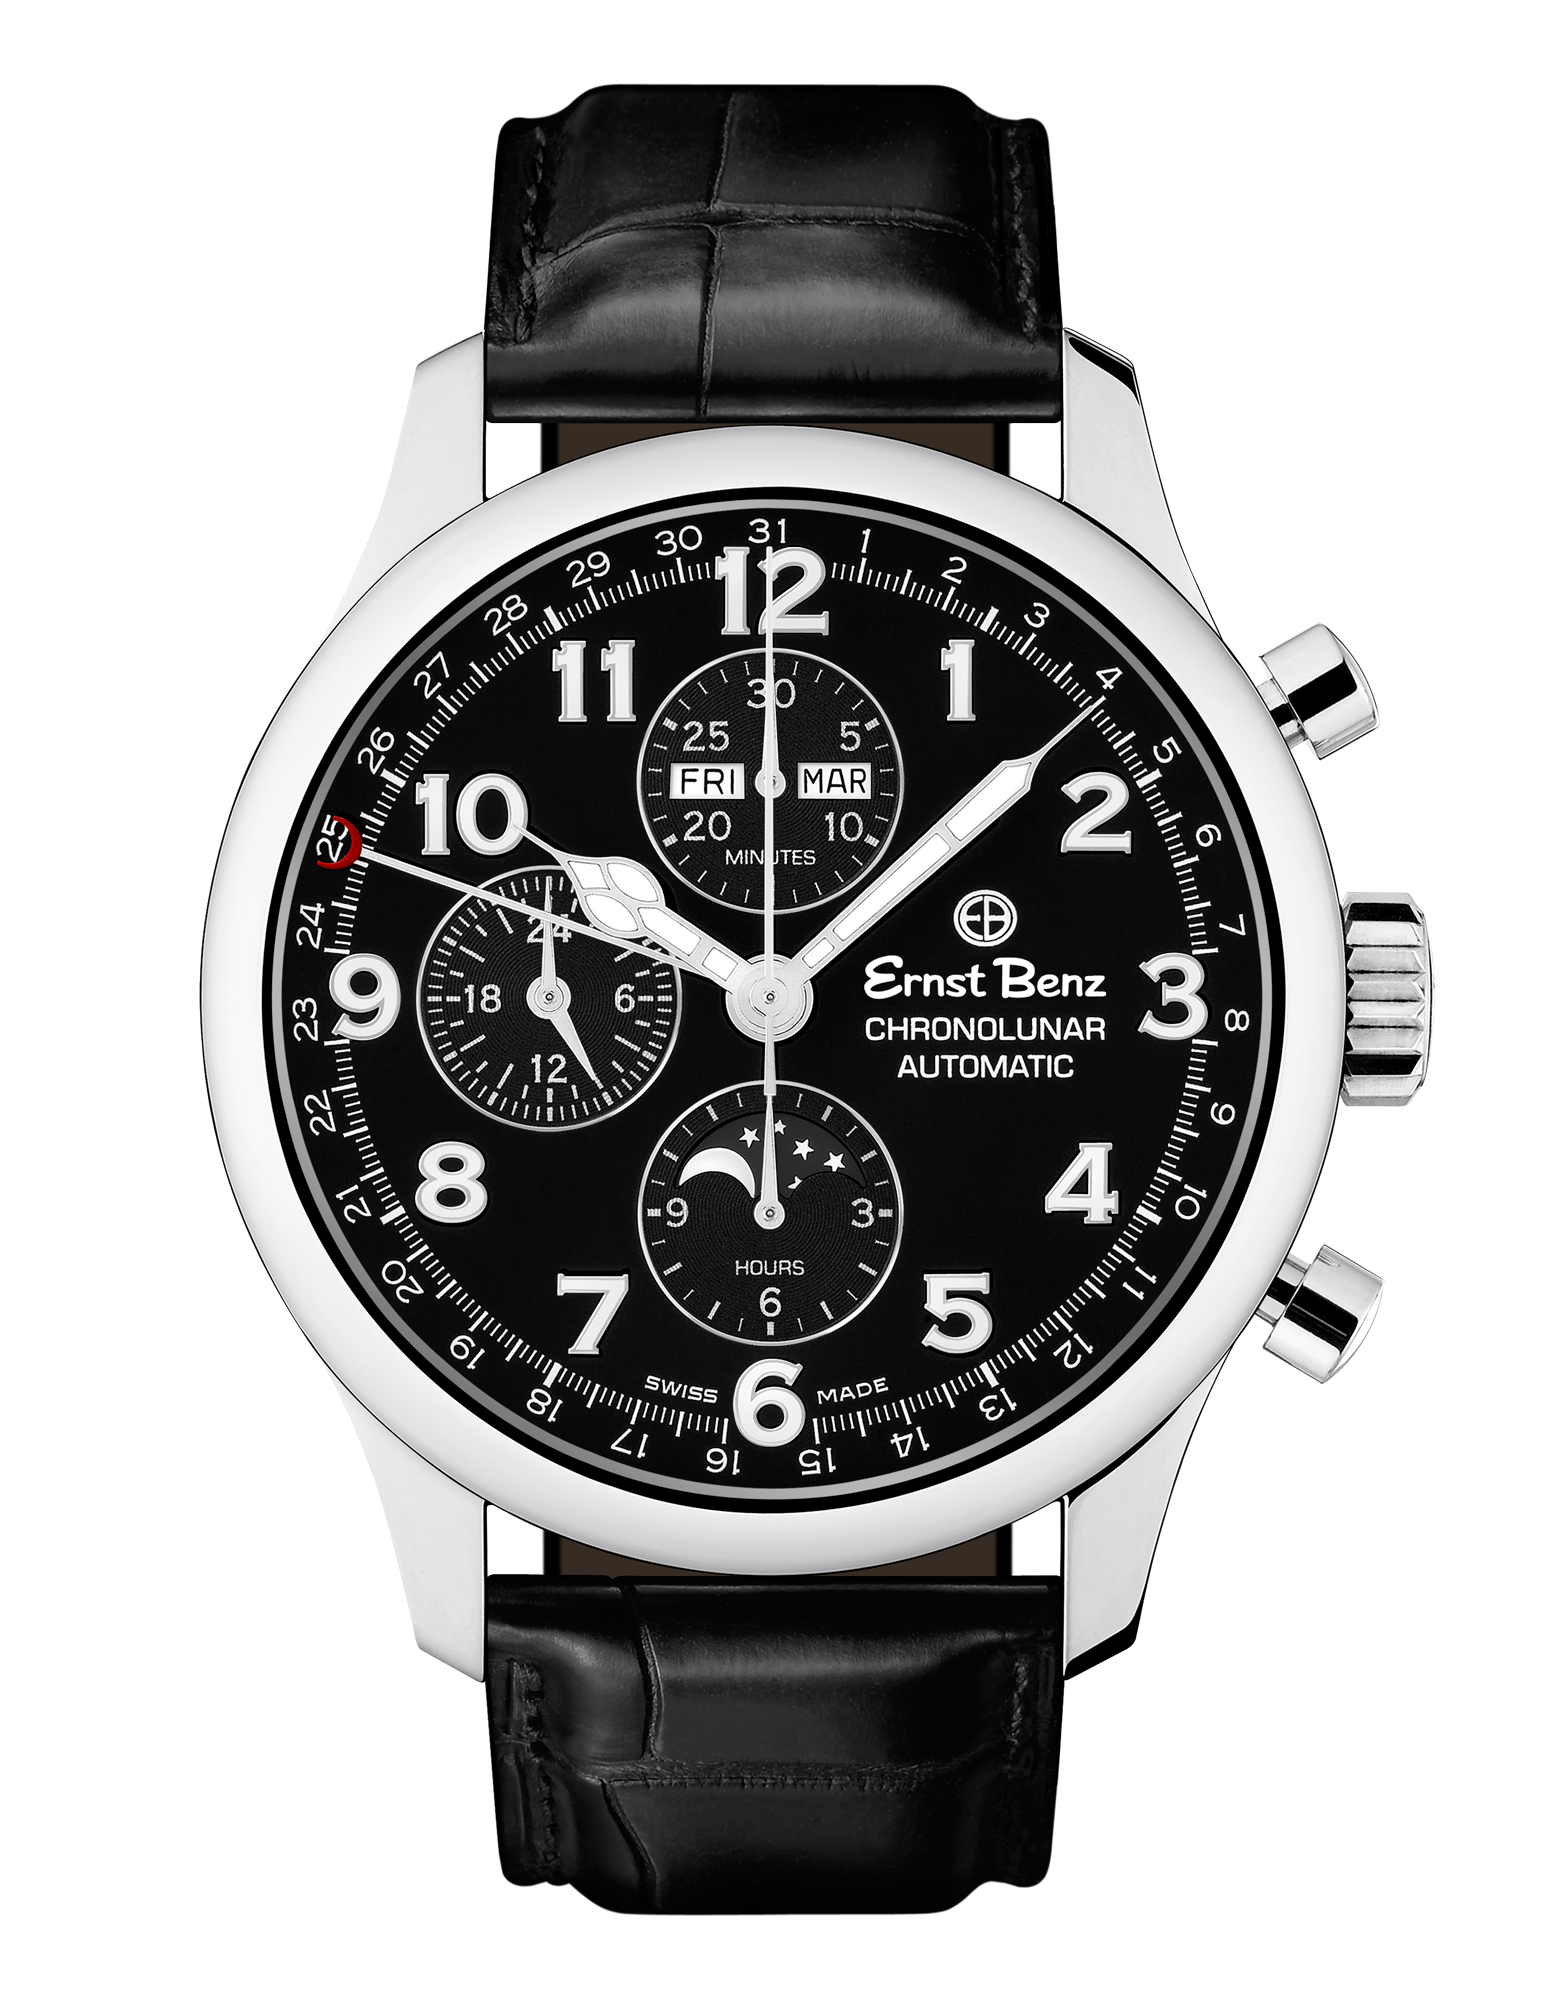 Ernst Benz Chronolunar Officer 44mm Steel Hands Black Dial Men's Watch GC40381